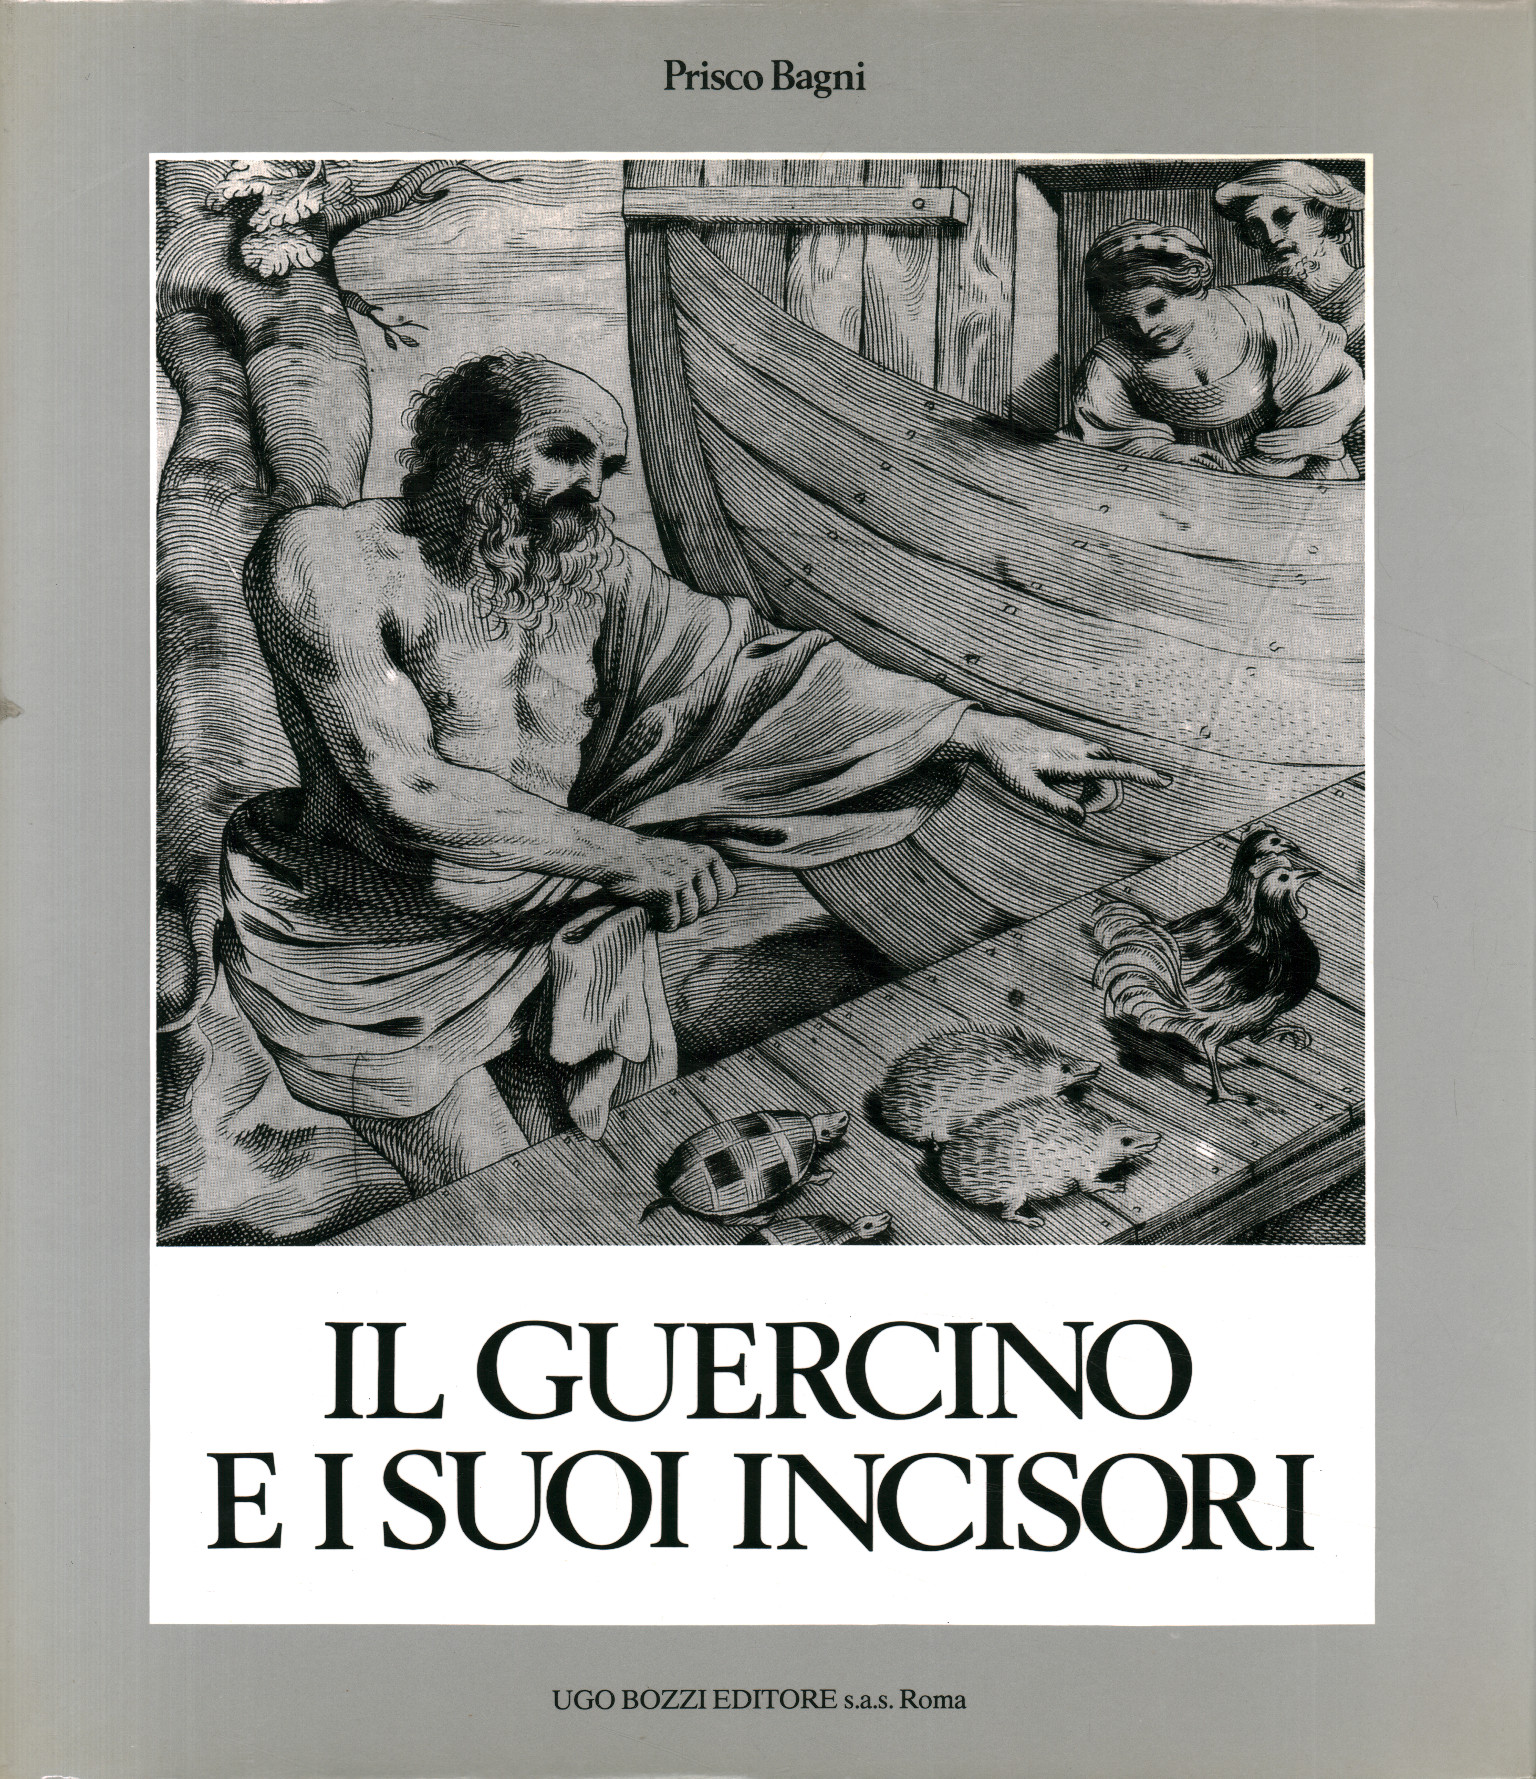 Guercino, Guercino und seine Stecher